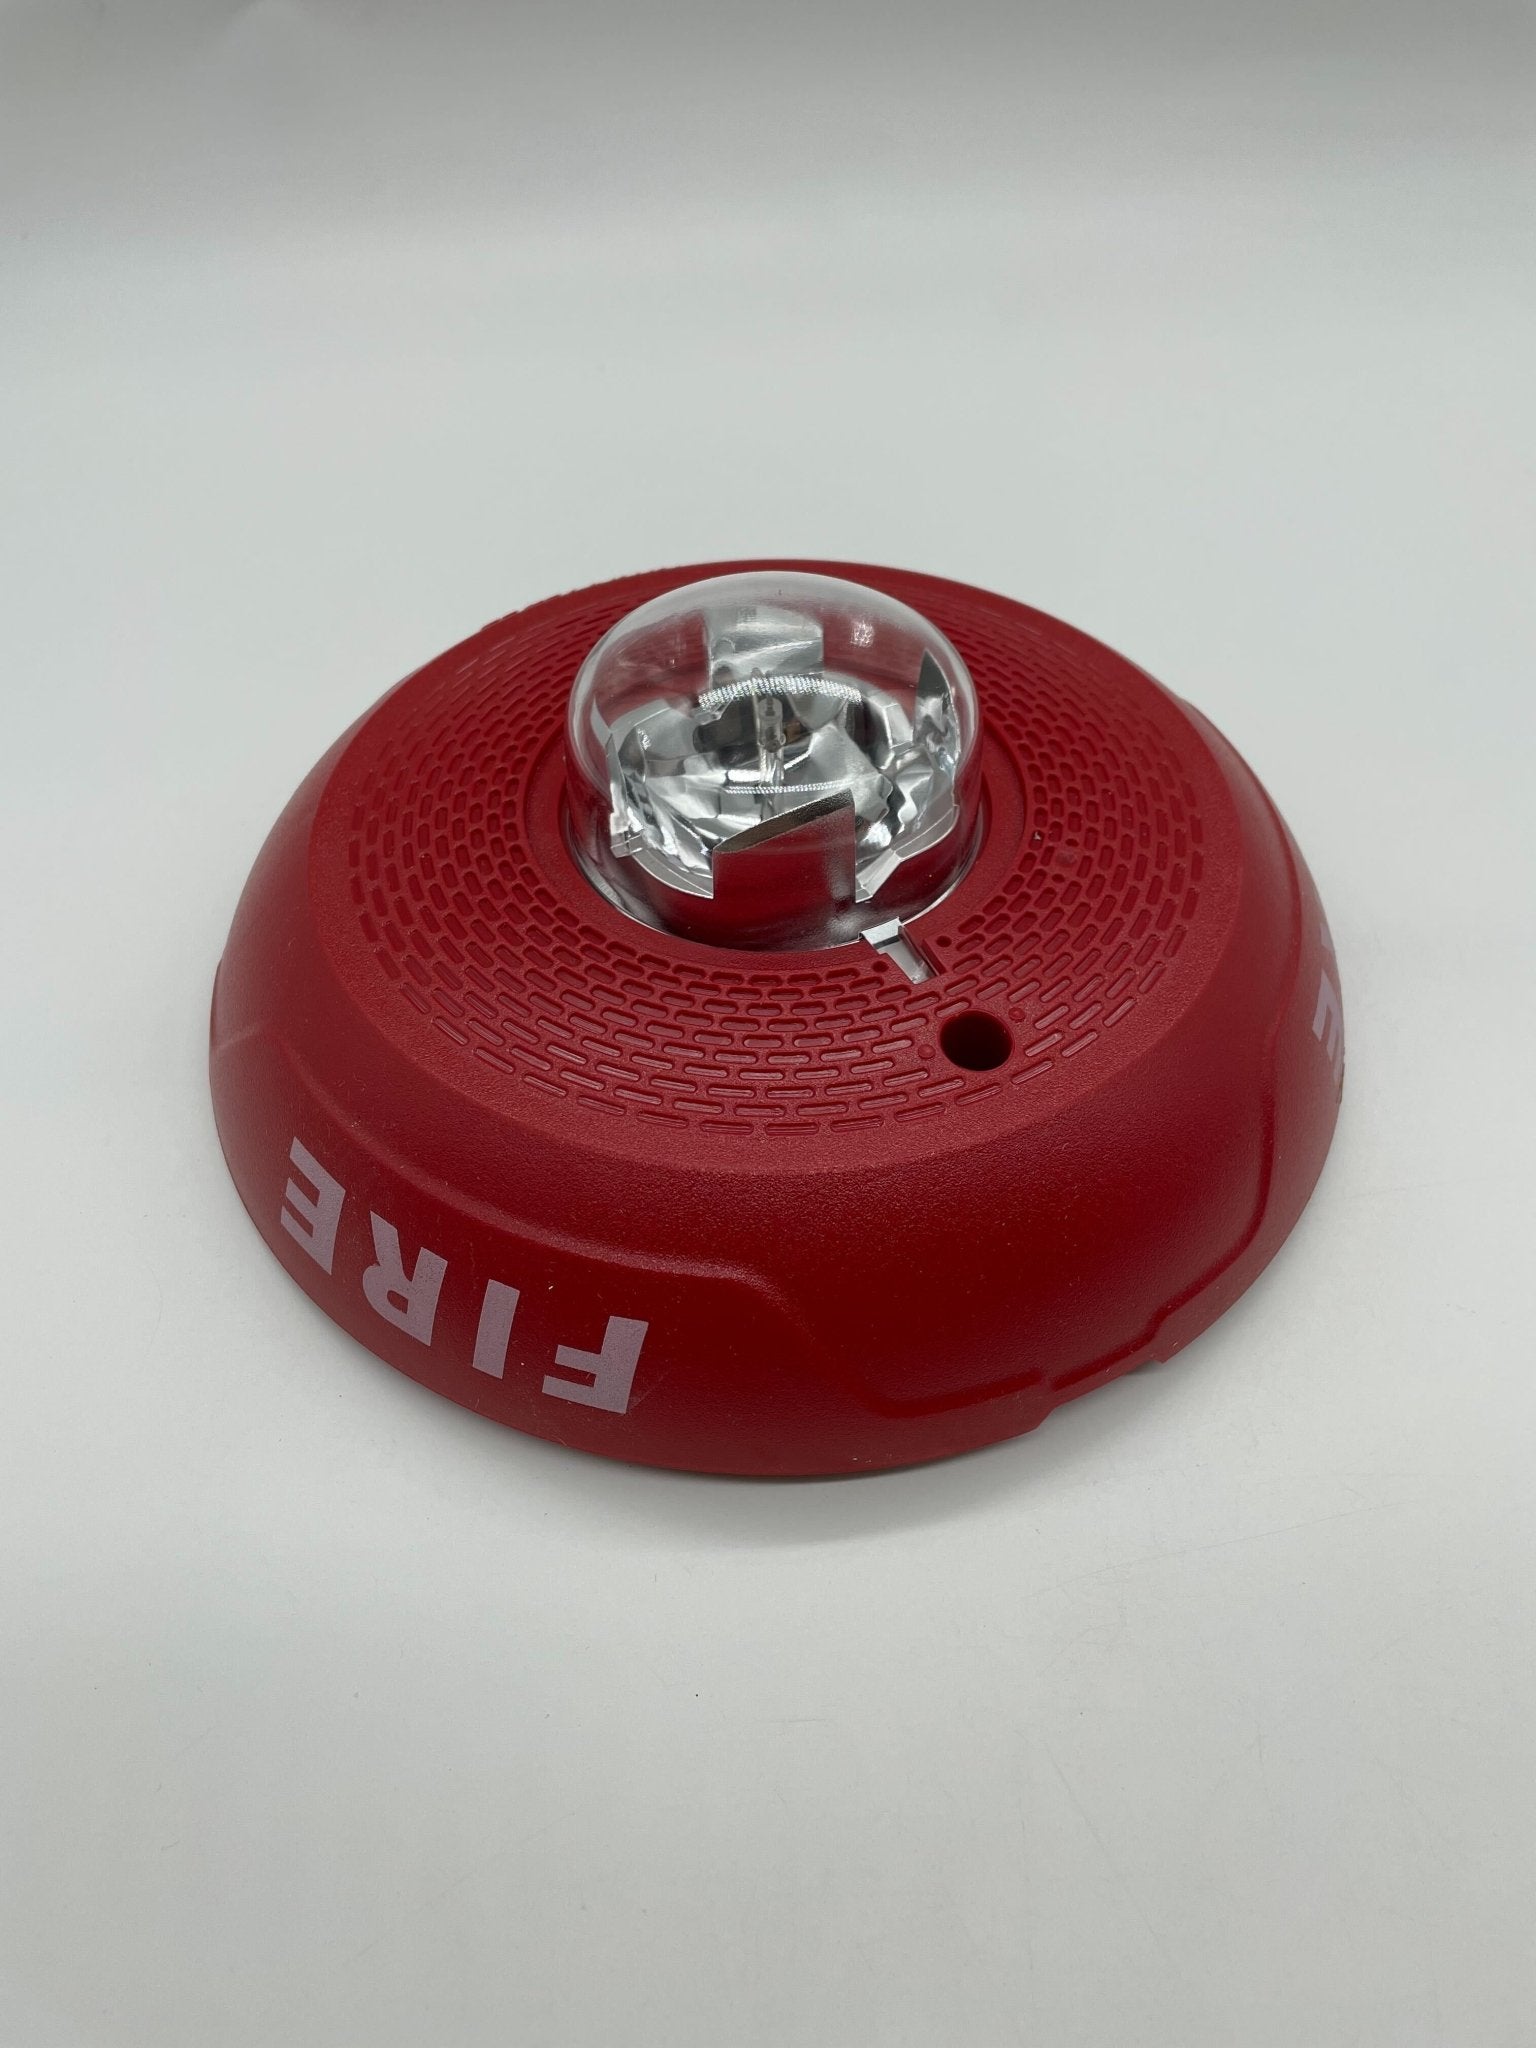 System Sensor PC4RL Horn Strobe Red For Ceiling - The Fire Alarm Supplier